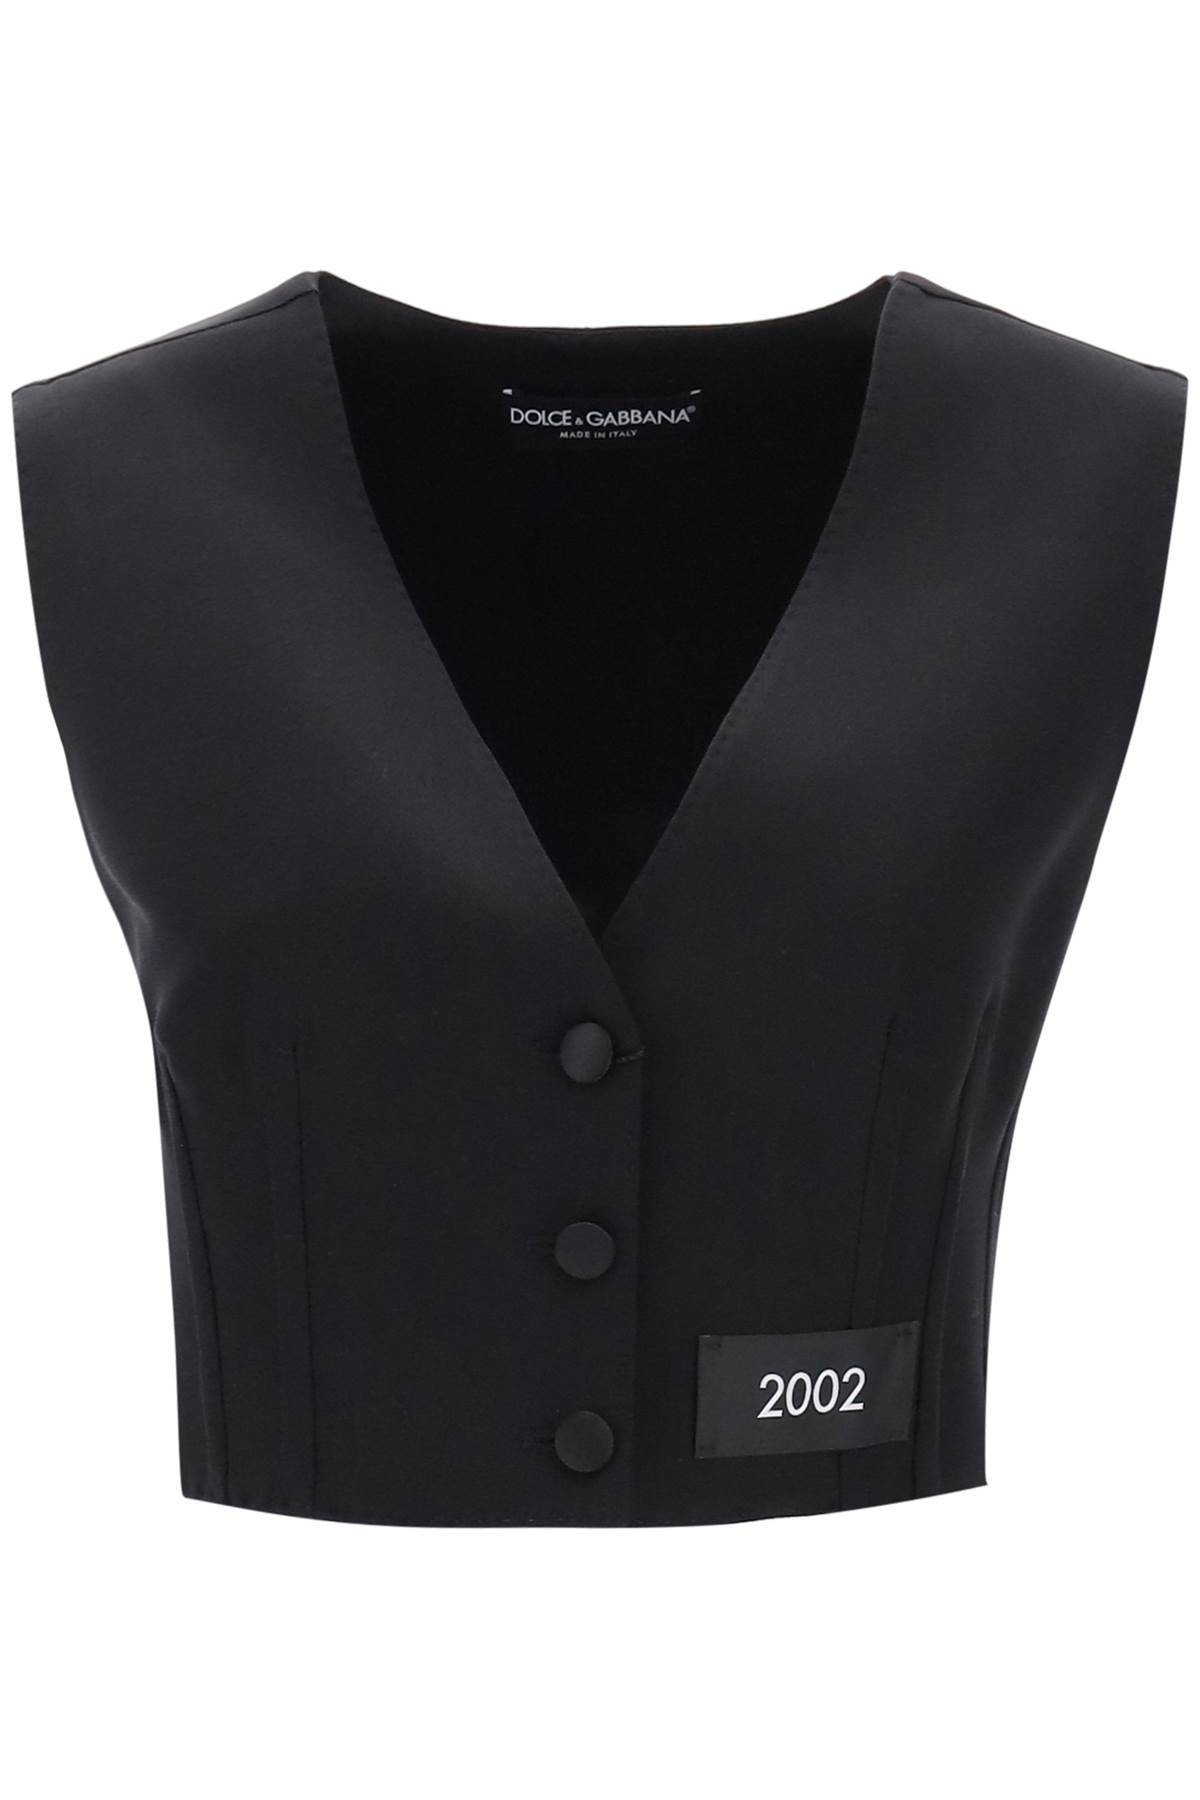 Dolce & Gabbana DOLCE & GABBANA re-edition tailoring waistcoat